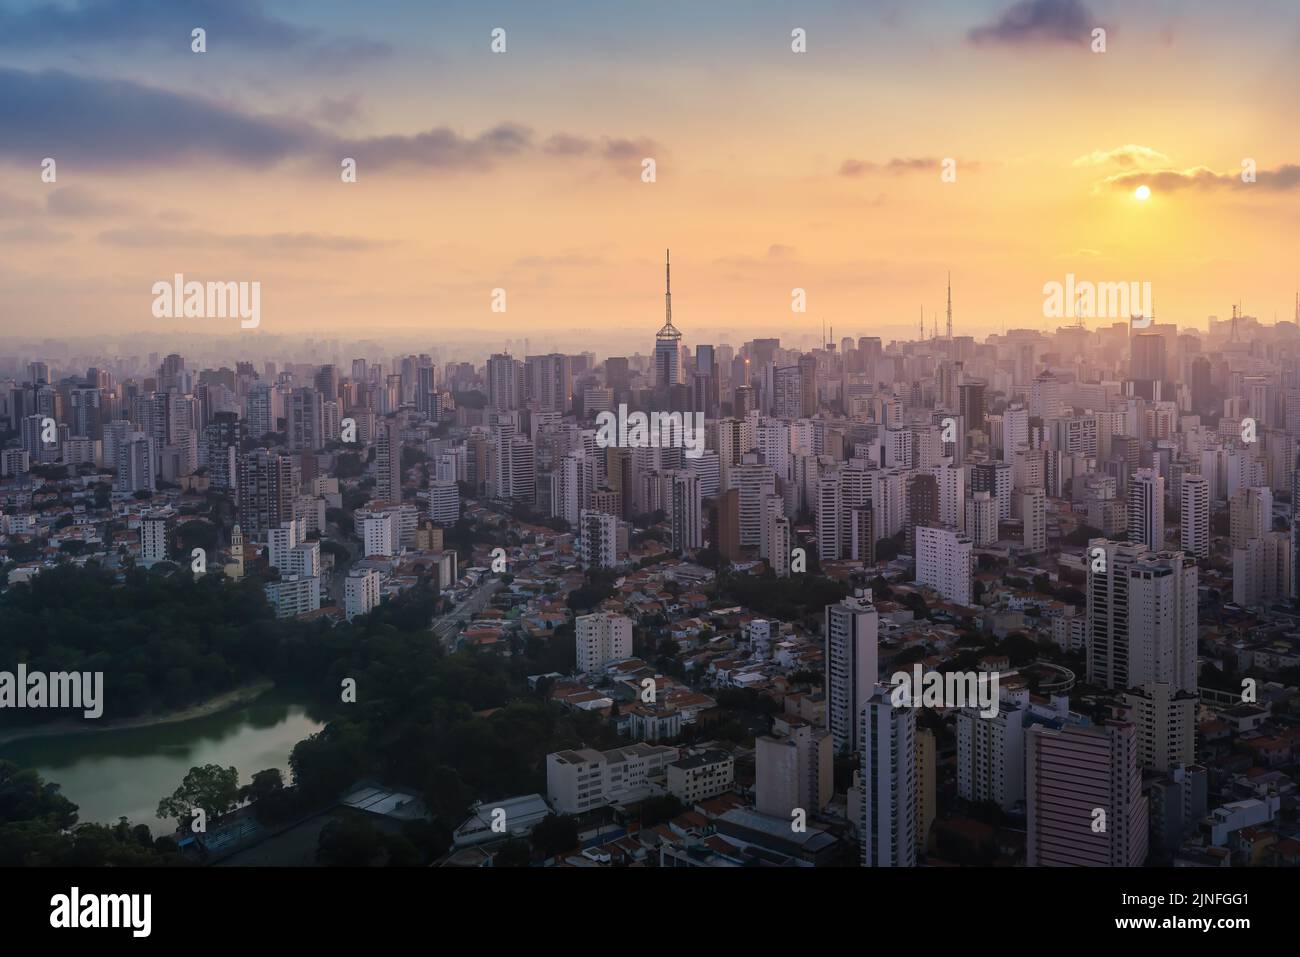 Luftaufnahme der Skyline von Sao Paulo mit dem Aclimacao Viertel und dem Aclimacao Park bei Sonnenuntergang - Sao Paulo, Brasilien Stockfoto